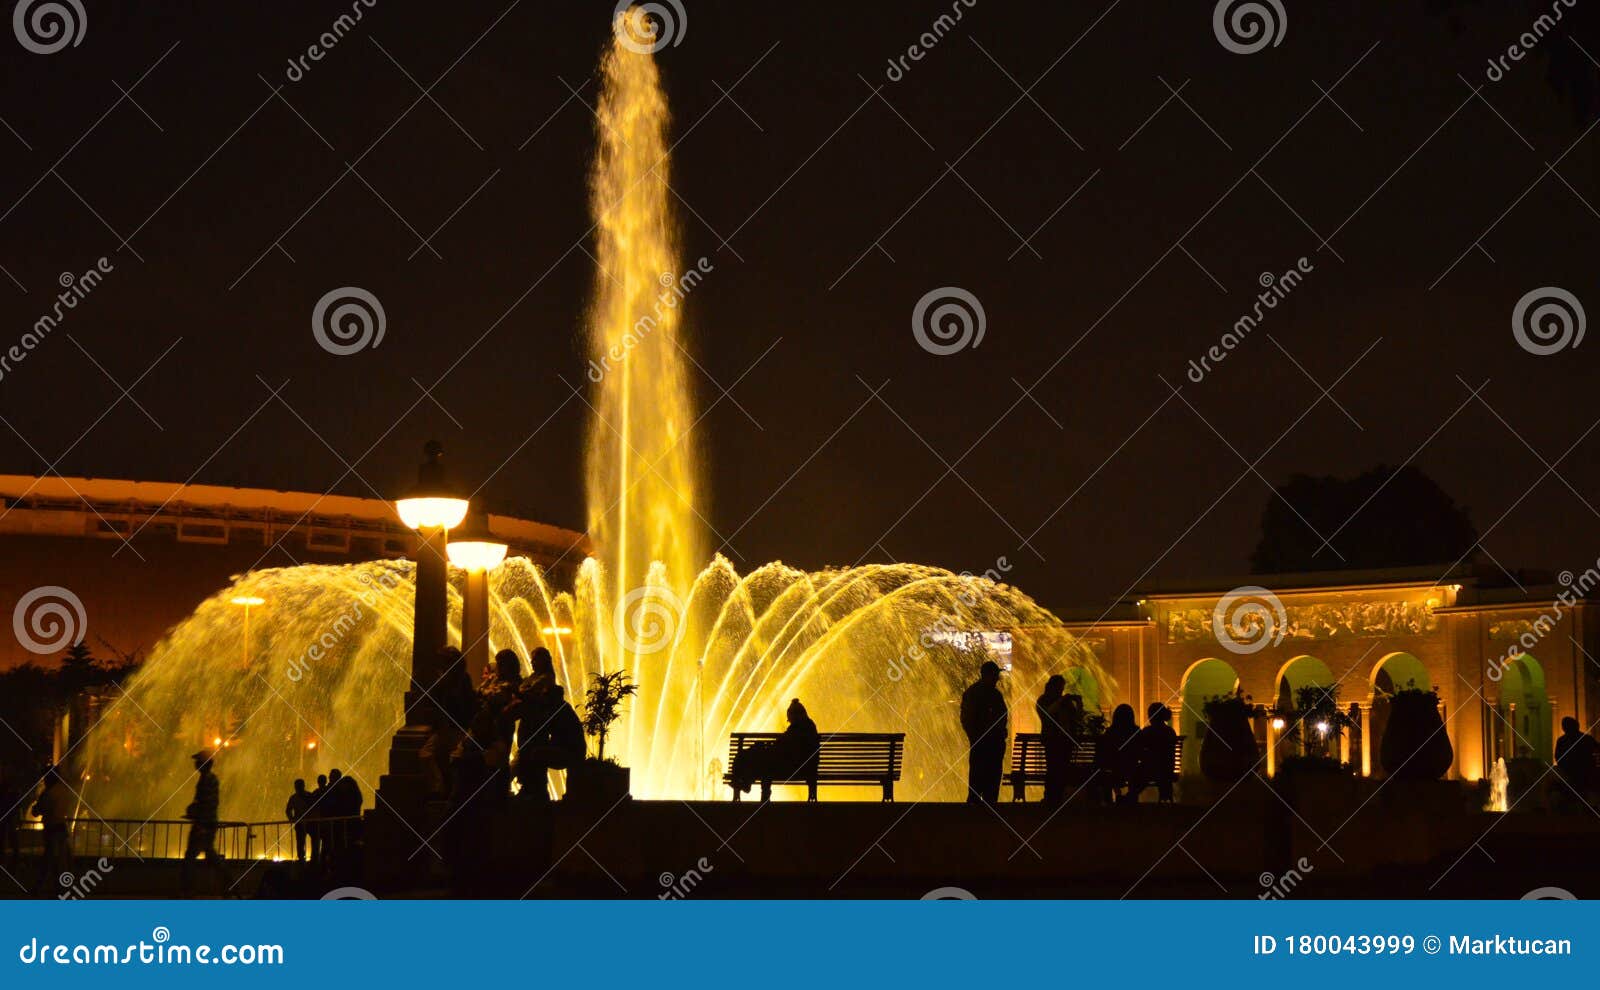 illuminated water fountains in the circuito magico de agua. lima peru